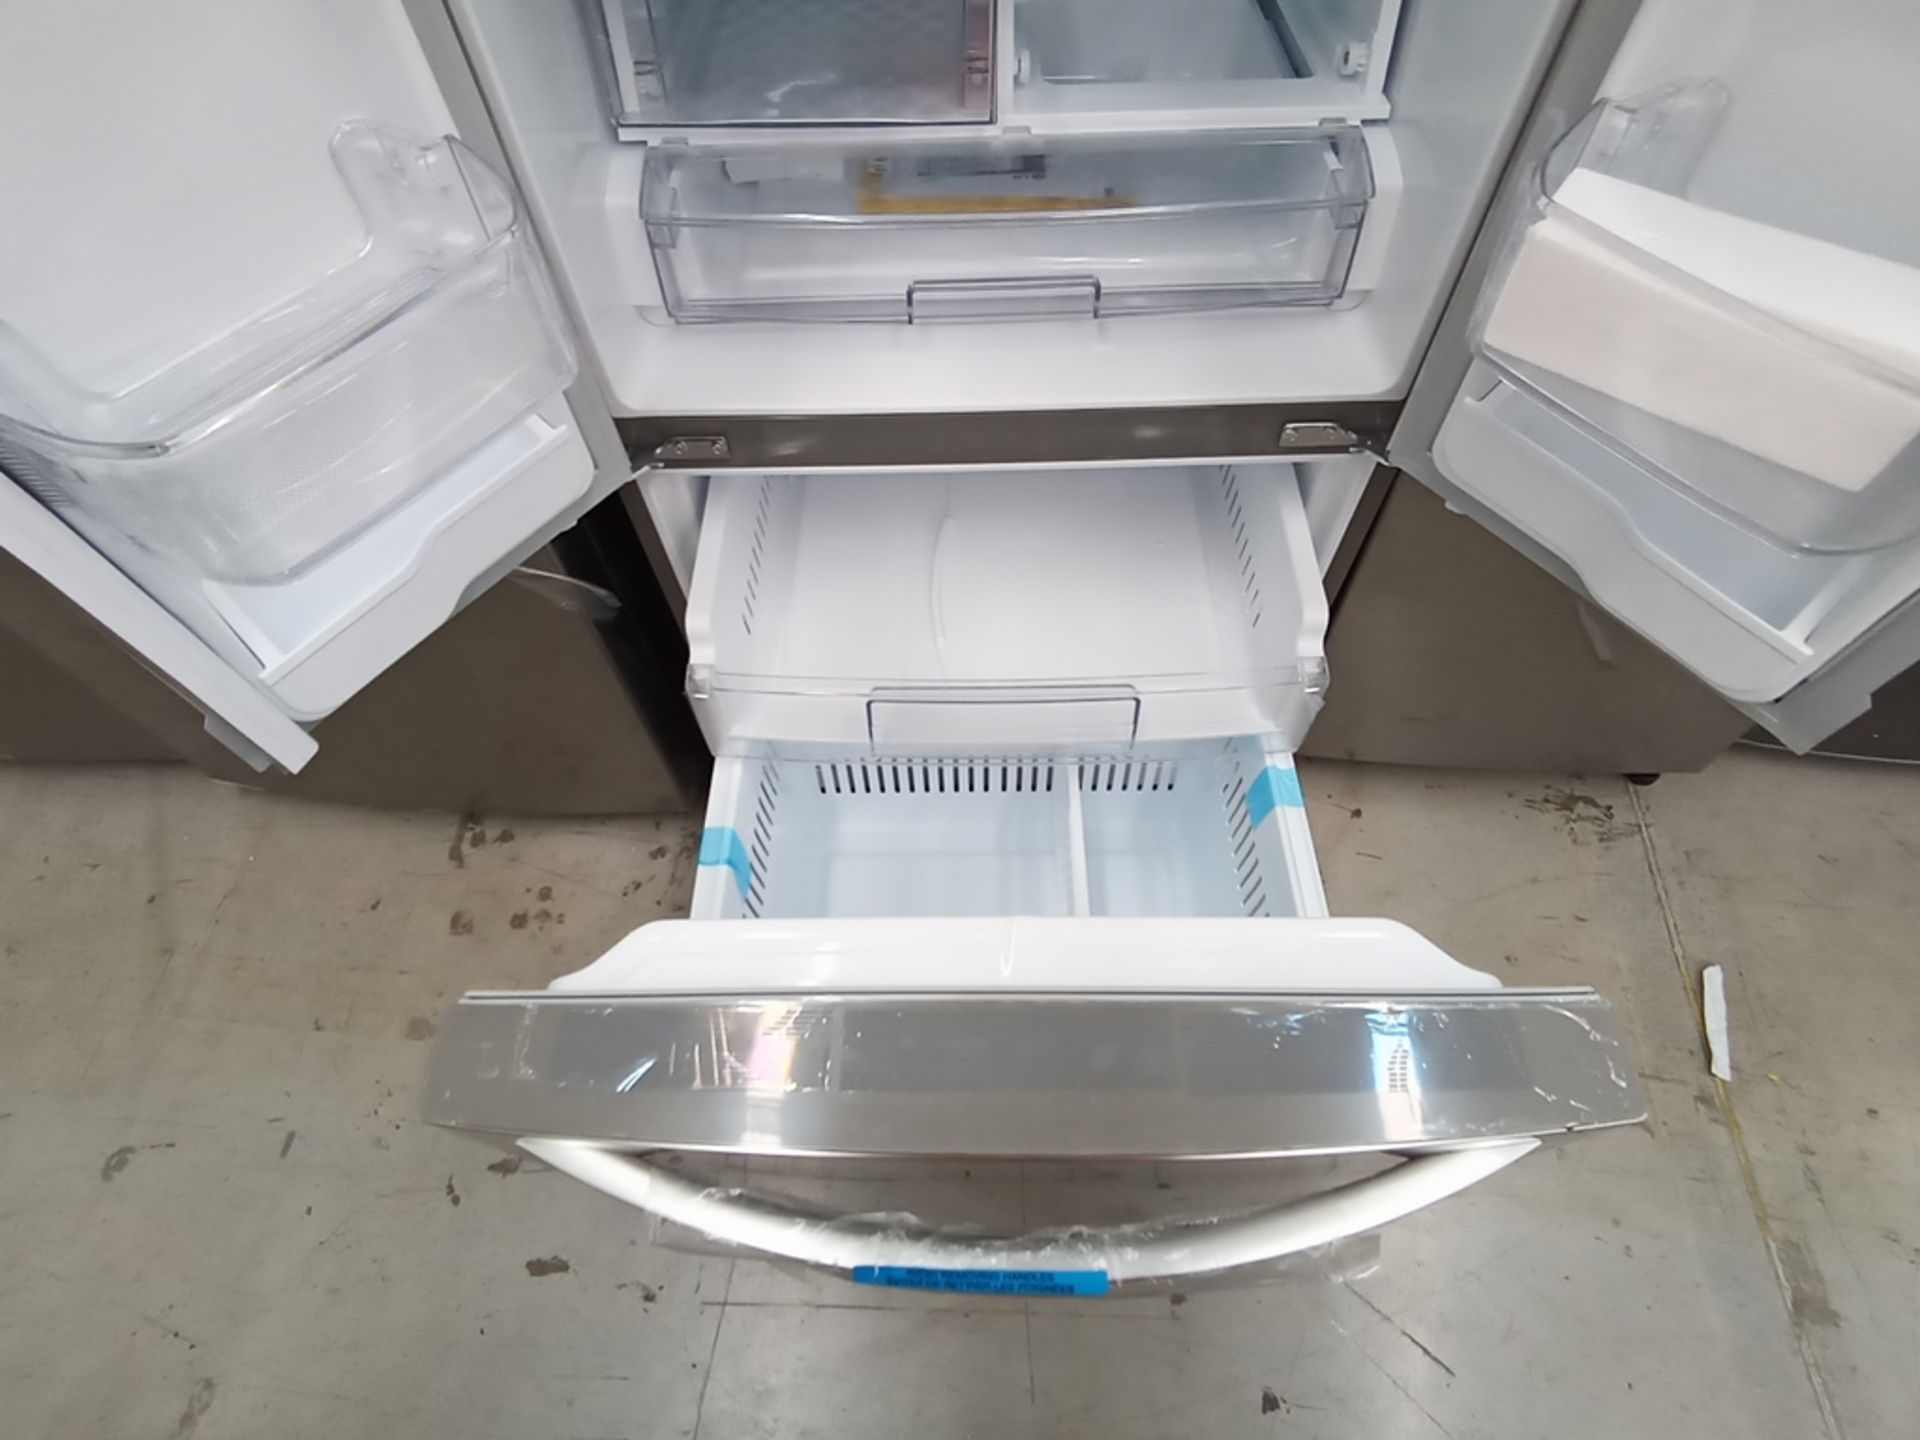 Lote de 2 refrigeradores contiene: 1 Refrigerador Marca LG, Modelo GF22BGSK, Serie 107MRMD4S595, Co - Image 10 of 16